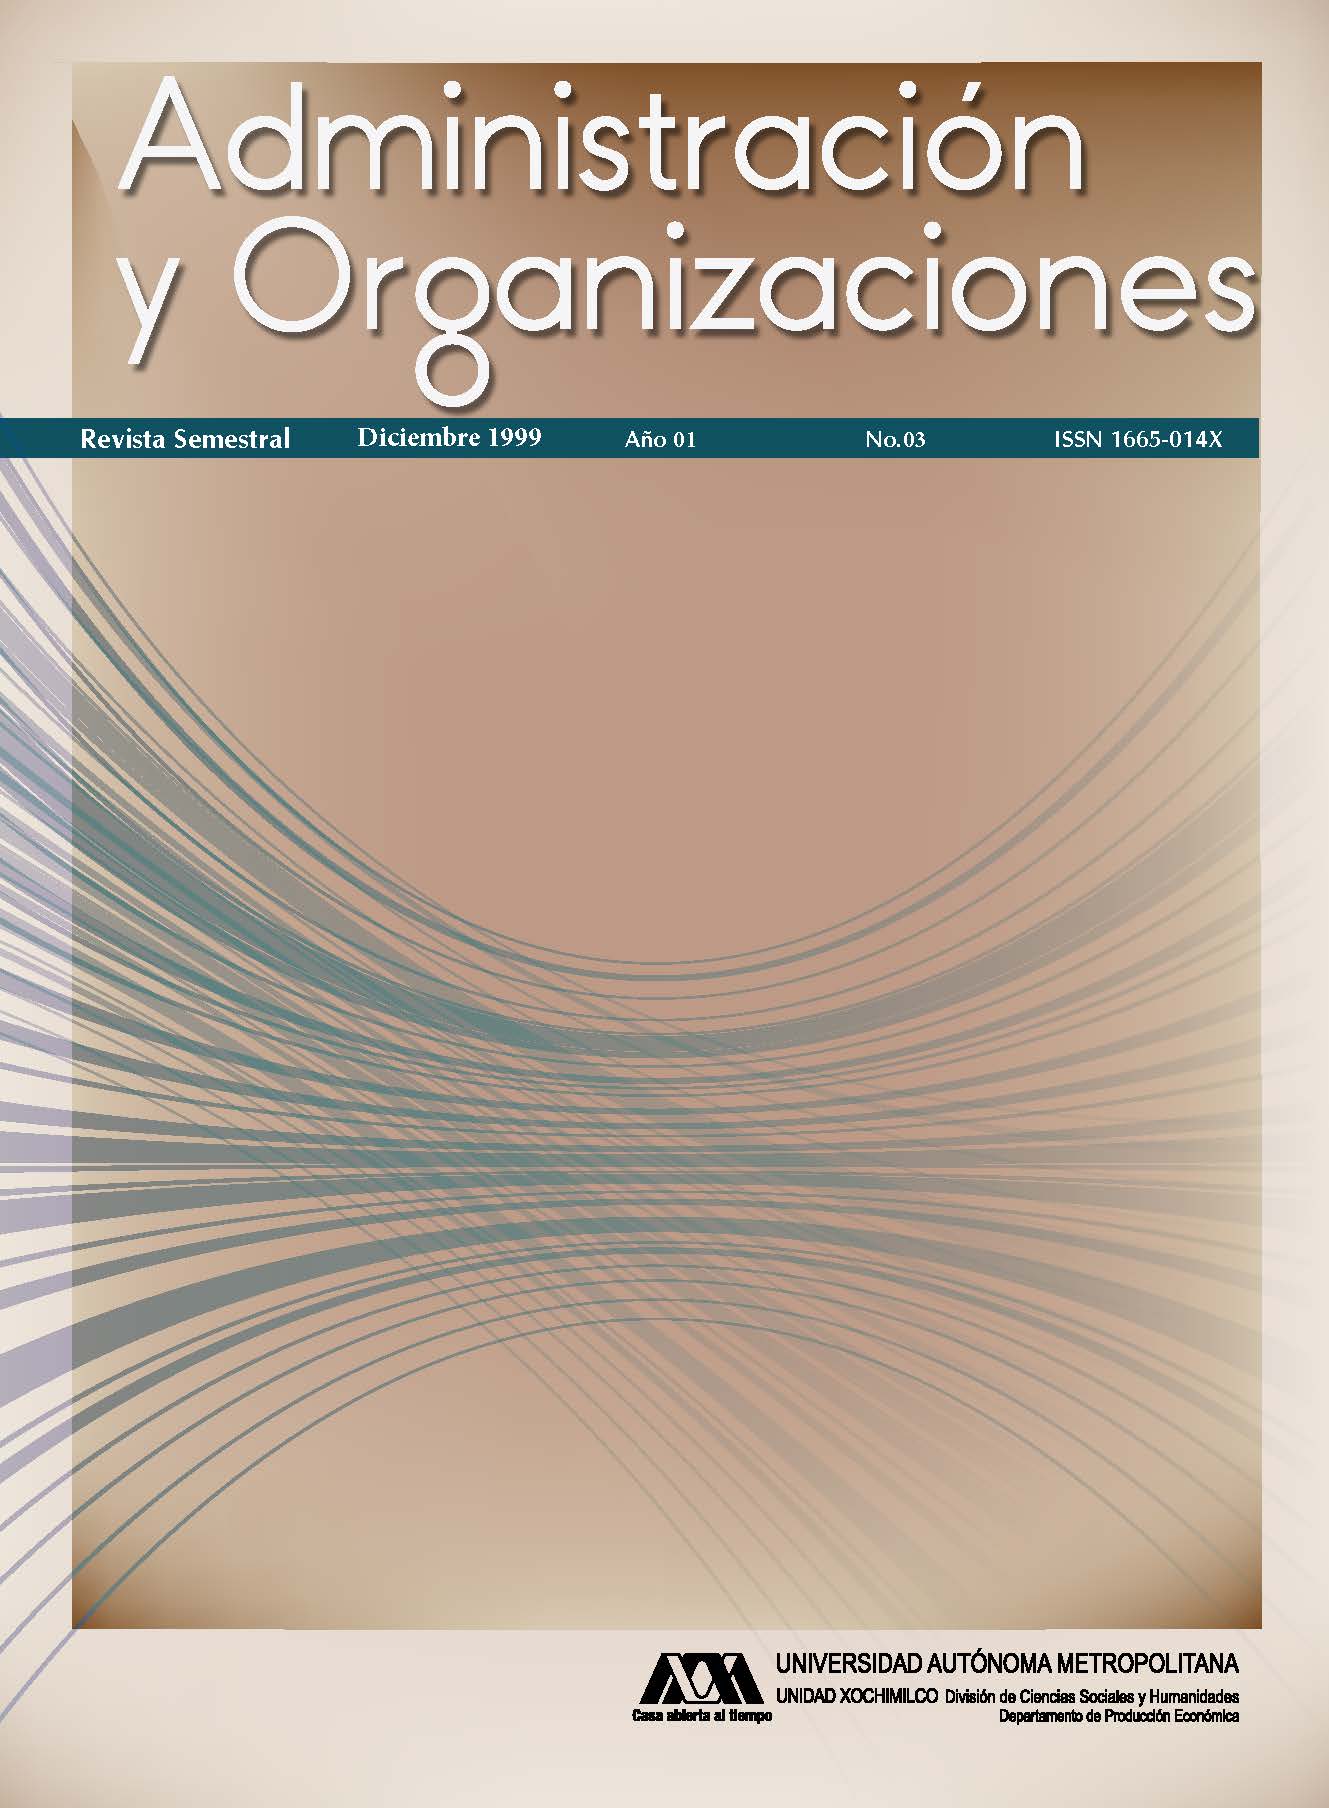 					View Vol. 1 No. 03 (1): Administración y Organizaciones
				